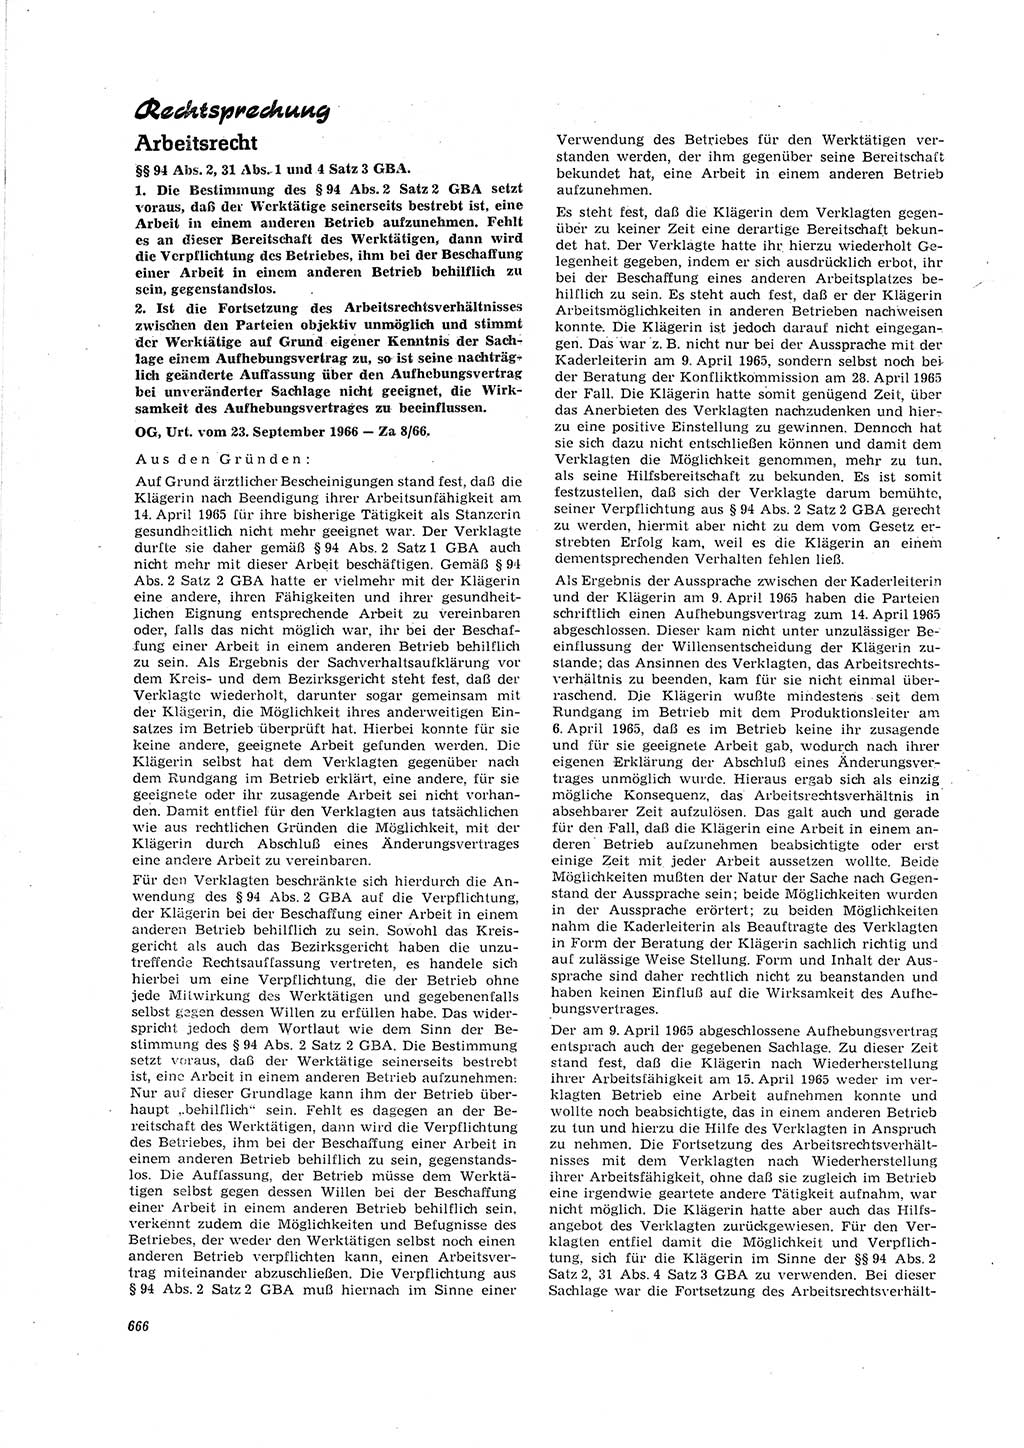 Neue Justiz (NJ), Zeitschrift für Recht und Rechtswissenschaft [Deutsche Demokratische Republik (DDR)], 20. Jahrgang 1966, Seite 666 (NJ DDR 1966, S. 666)